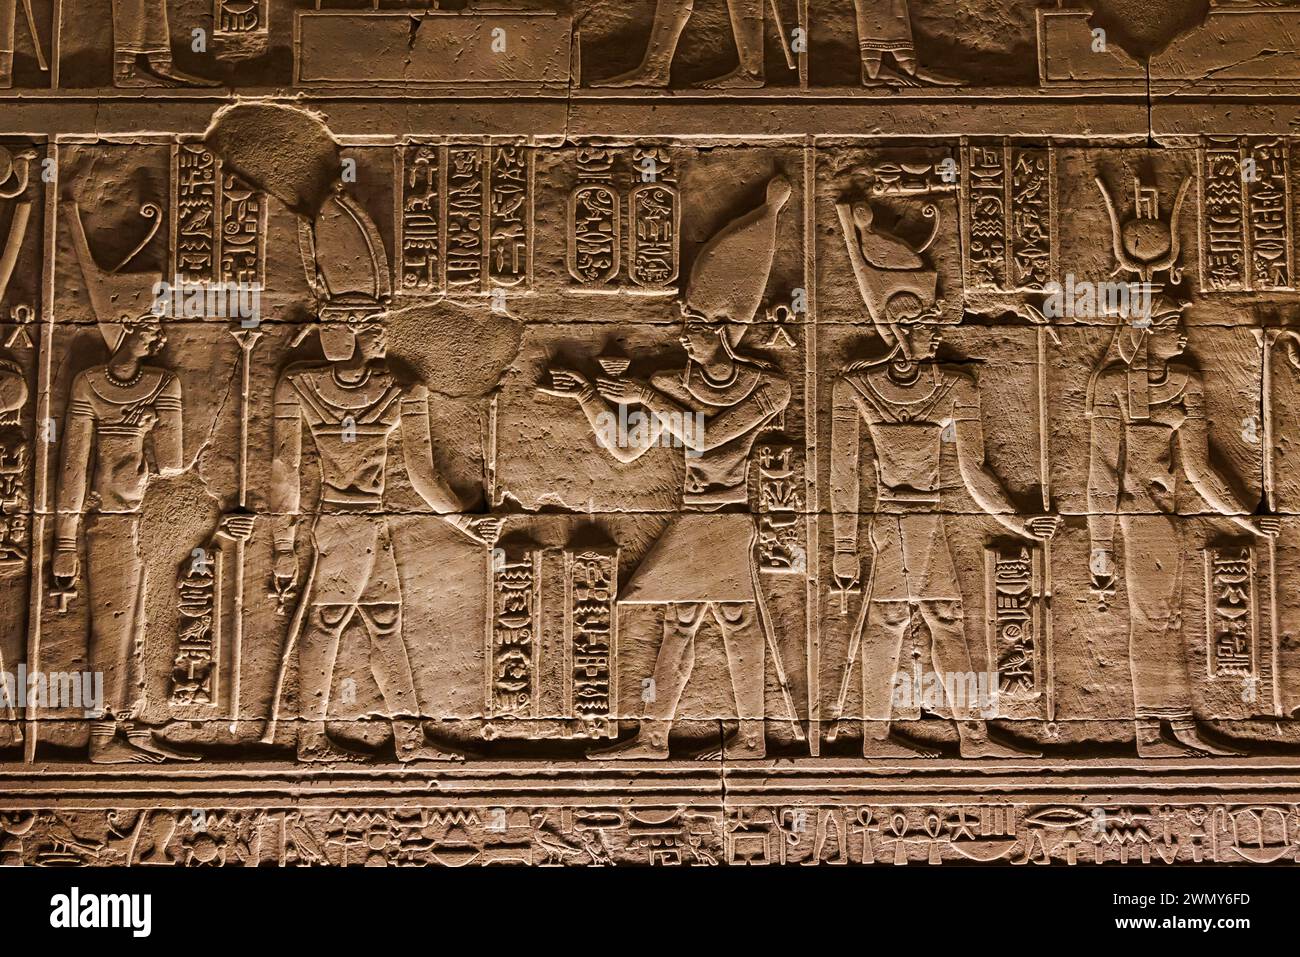 Egitto, Assuan, monumenti nubiani da Abu Simbel a file, patrimonio dell'umanità dell'UNESCO, tempio di Kalabsha, bassorilievo sul muro Foto Stock